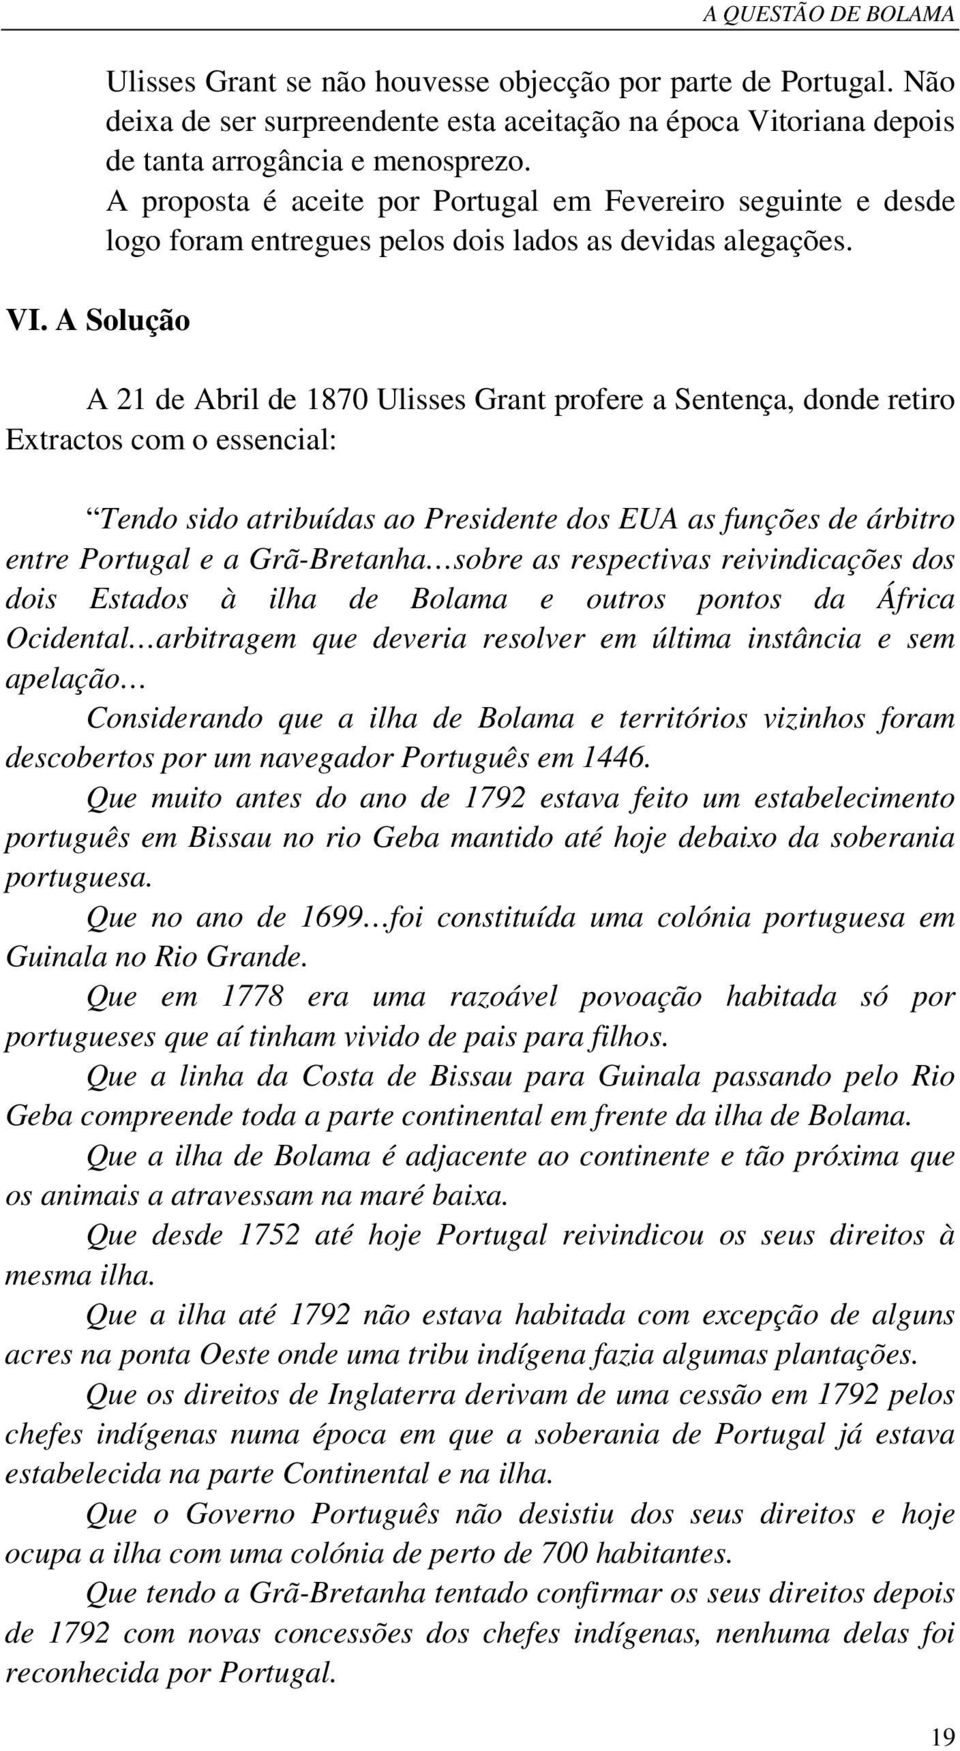 A proposta é aceite por Portugal em Fevereiro seguinte e desde logo foram entregues pelos dois lados as devidas alegações.